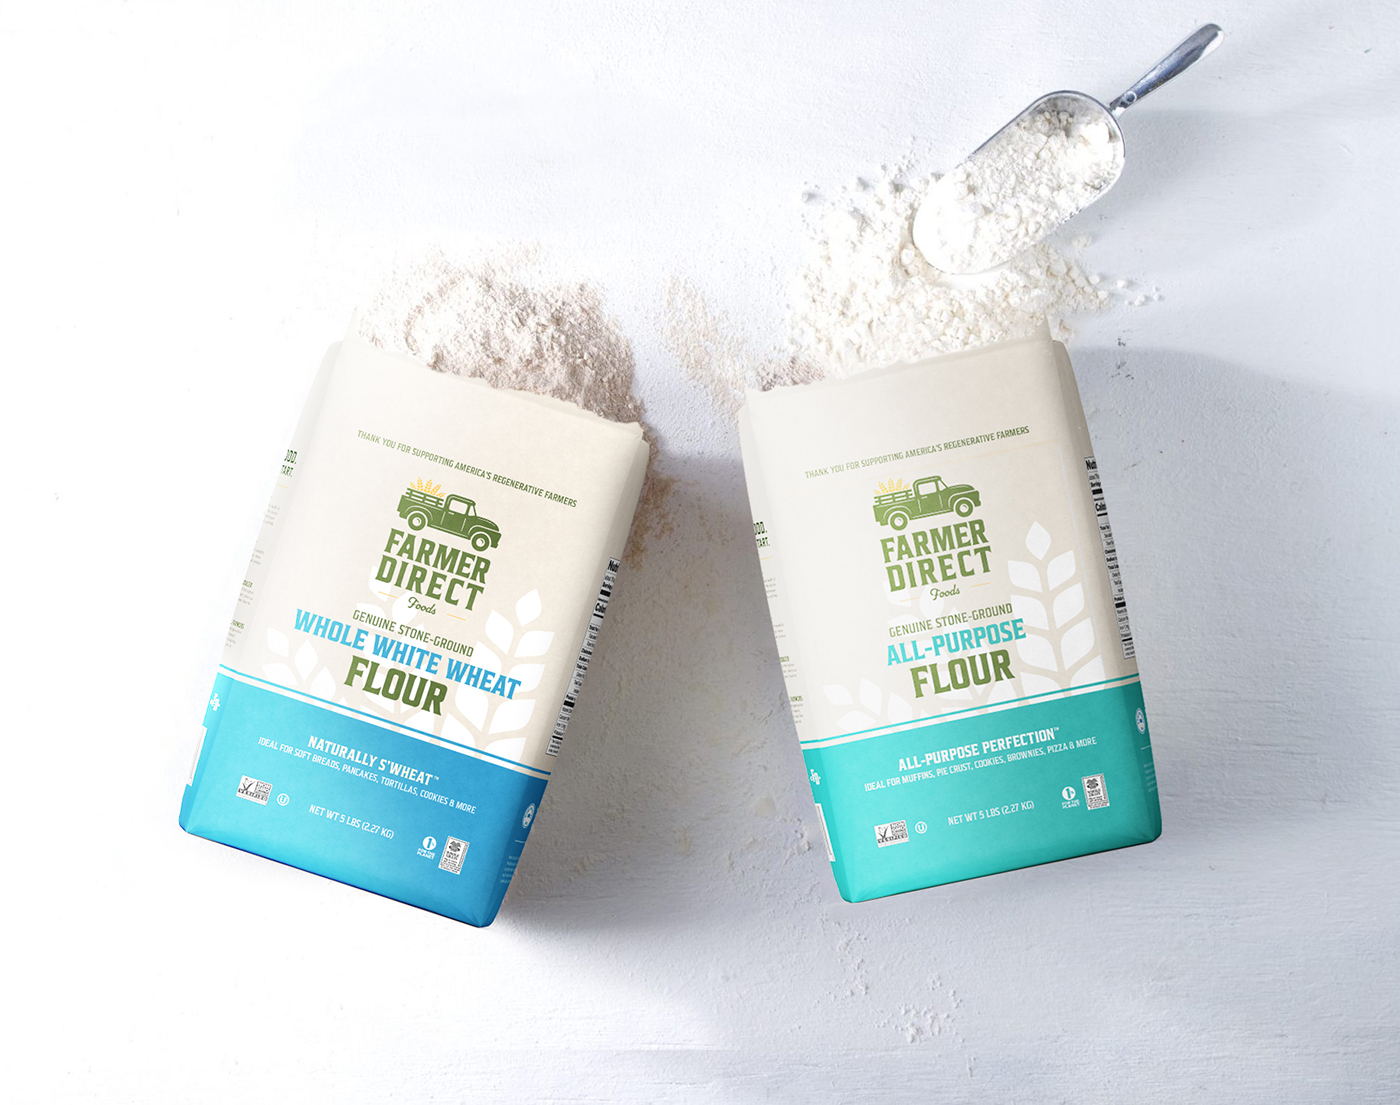 Pure whole grain flour